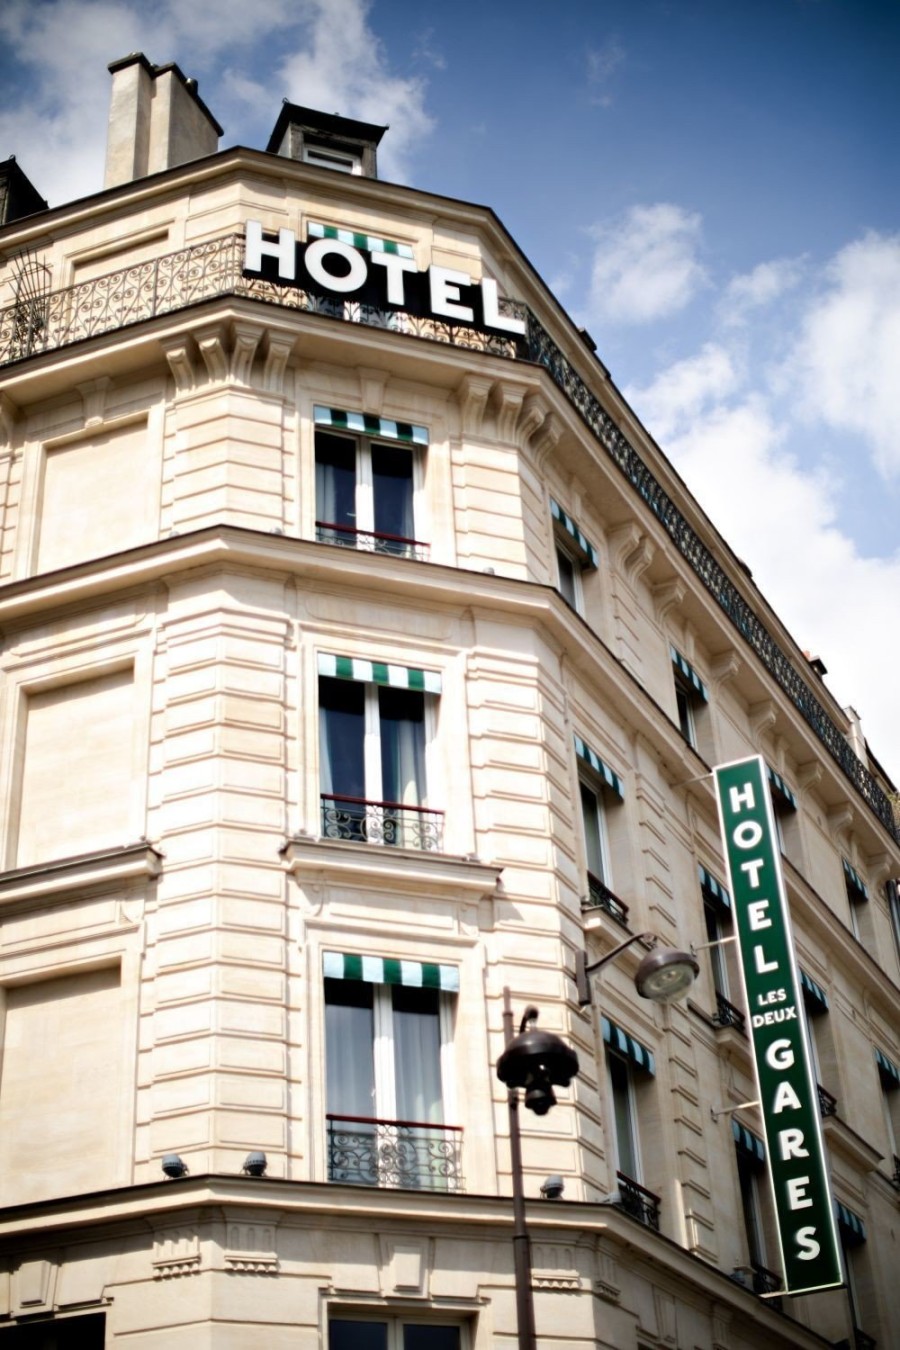 Το ολοκαίνουριο ξενοδοχείο "Les Deux Gares" θα μπορούσε να είναι το σπίτι ενός εκκεντρικού bohemian Παριζιάνου συλλέκτη - Φωτογραφία 5